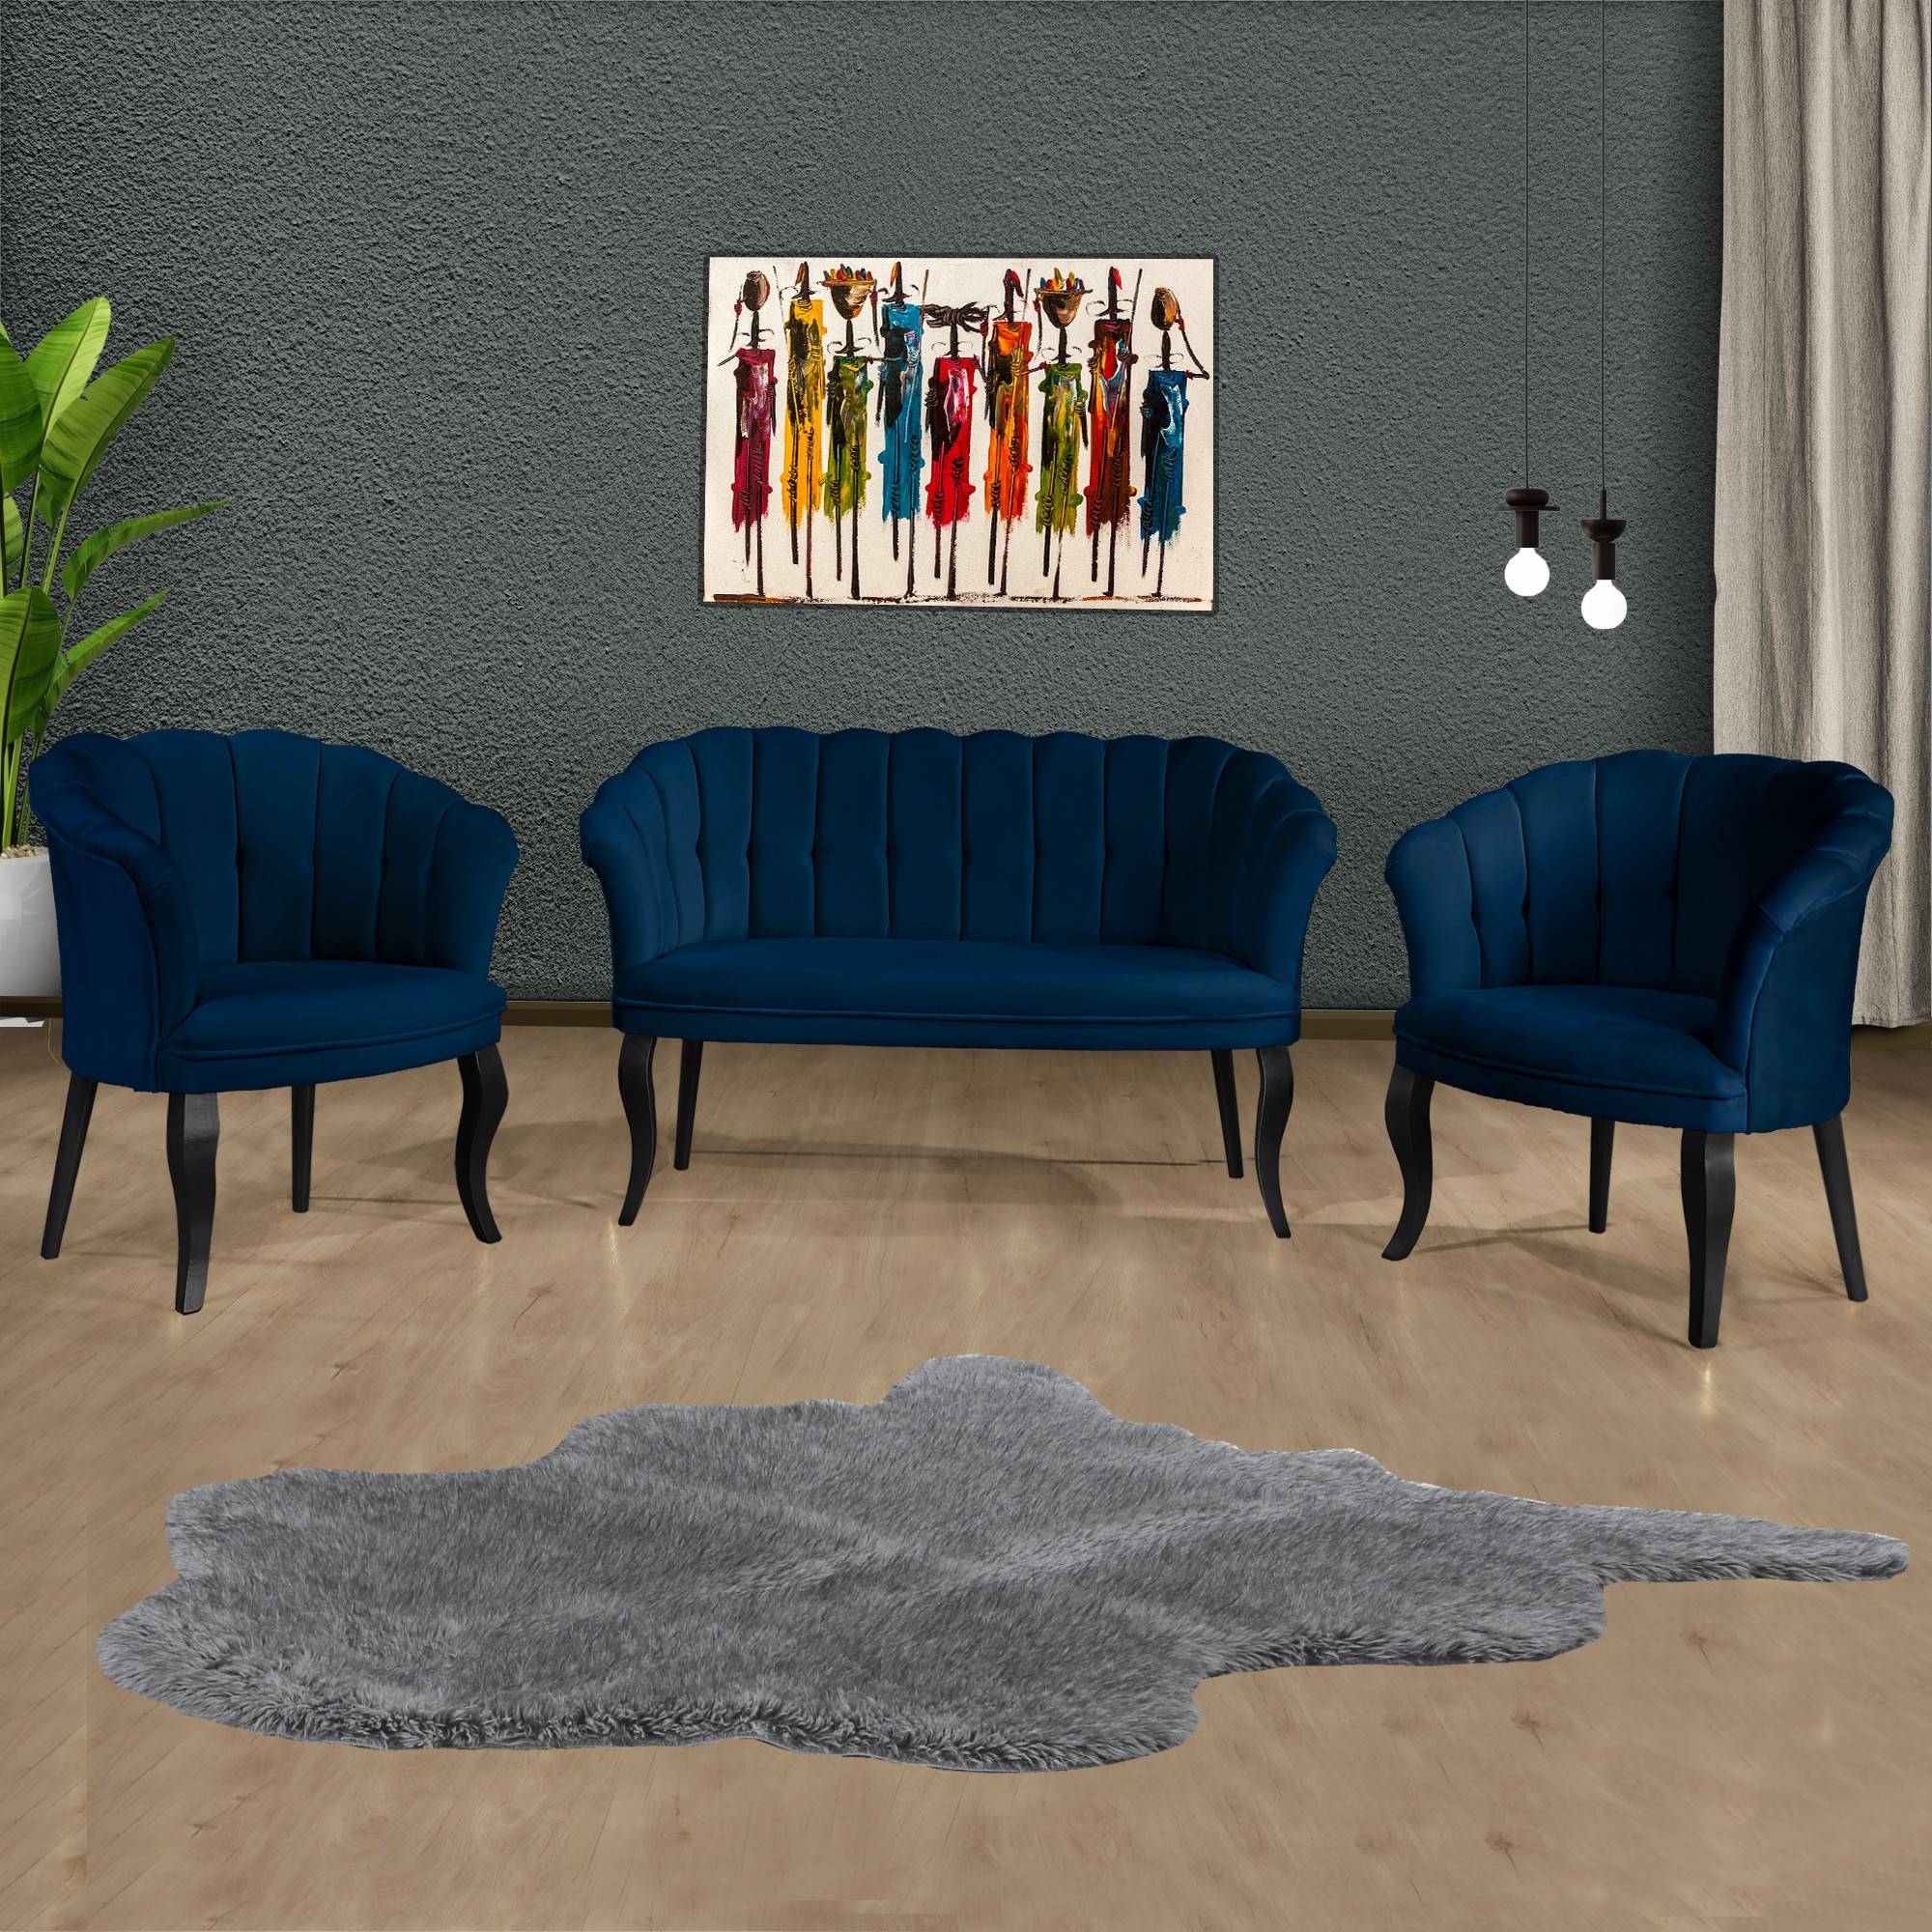 Conjunto de sofá de 2 plazas y 2 sillones Saned Terciopelo azul oscuro y madera maciza negra